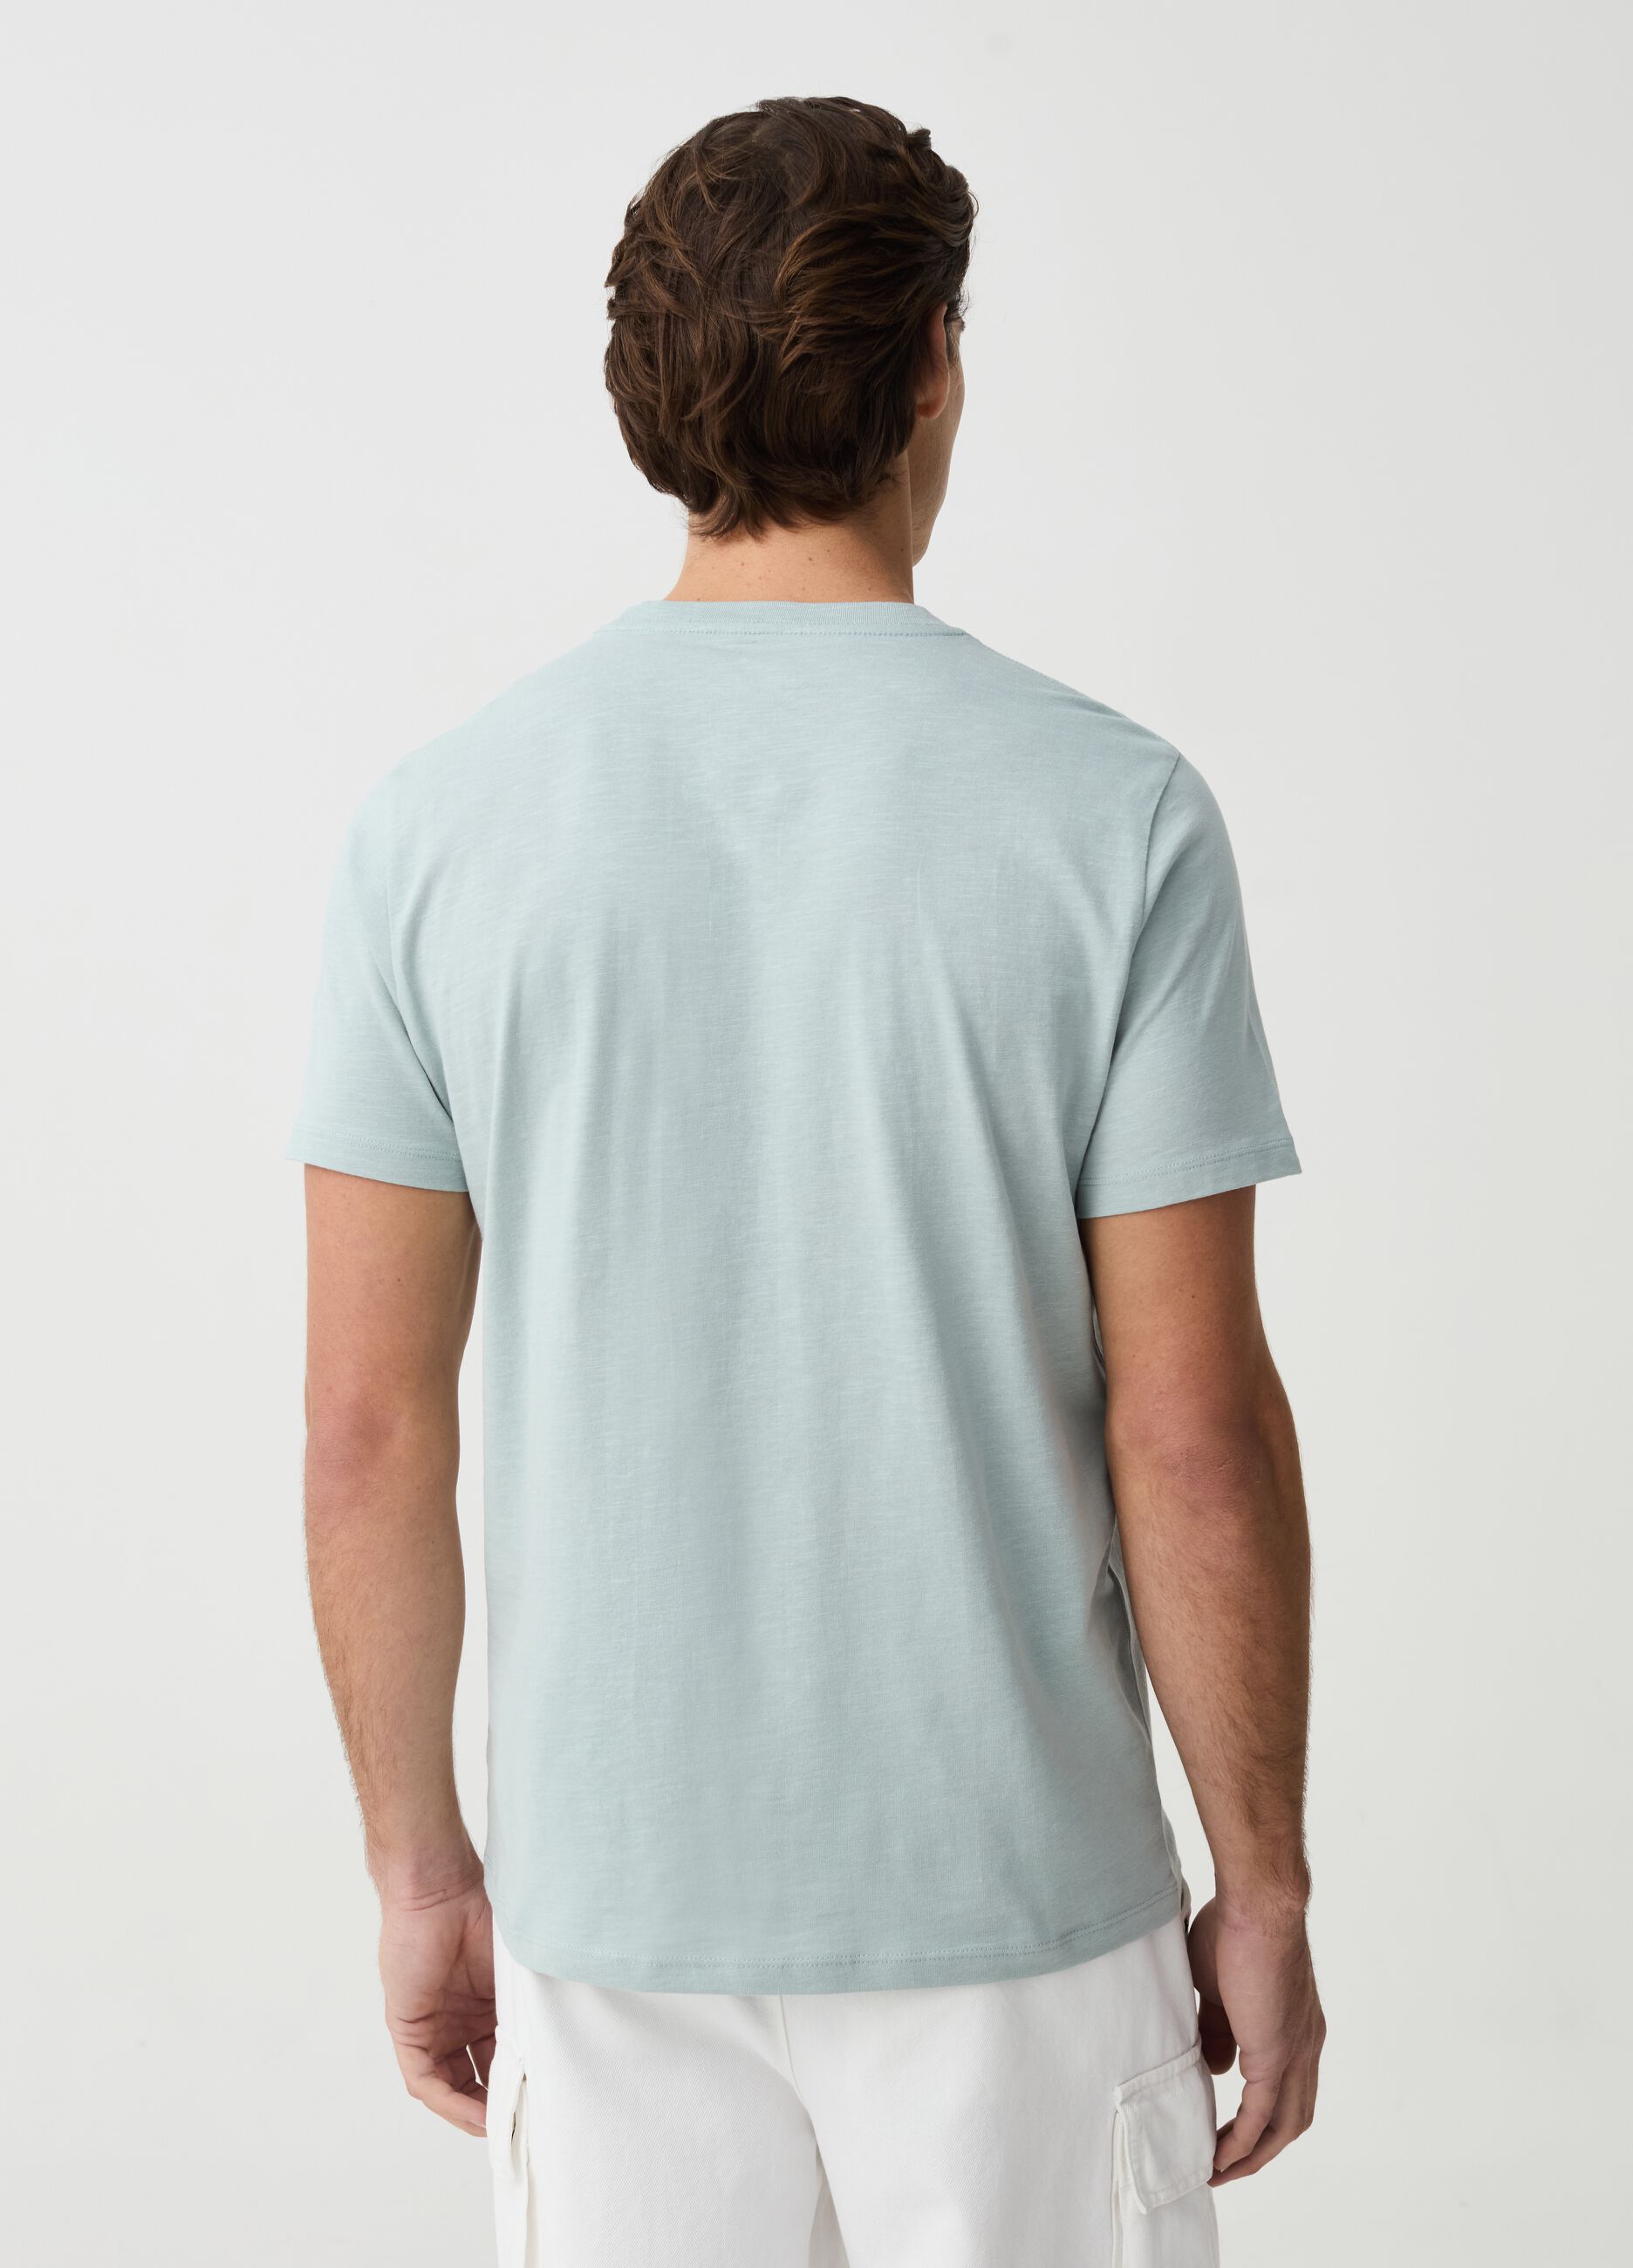 T-shirt in slub jersey di cotone bio